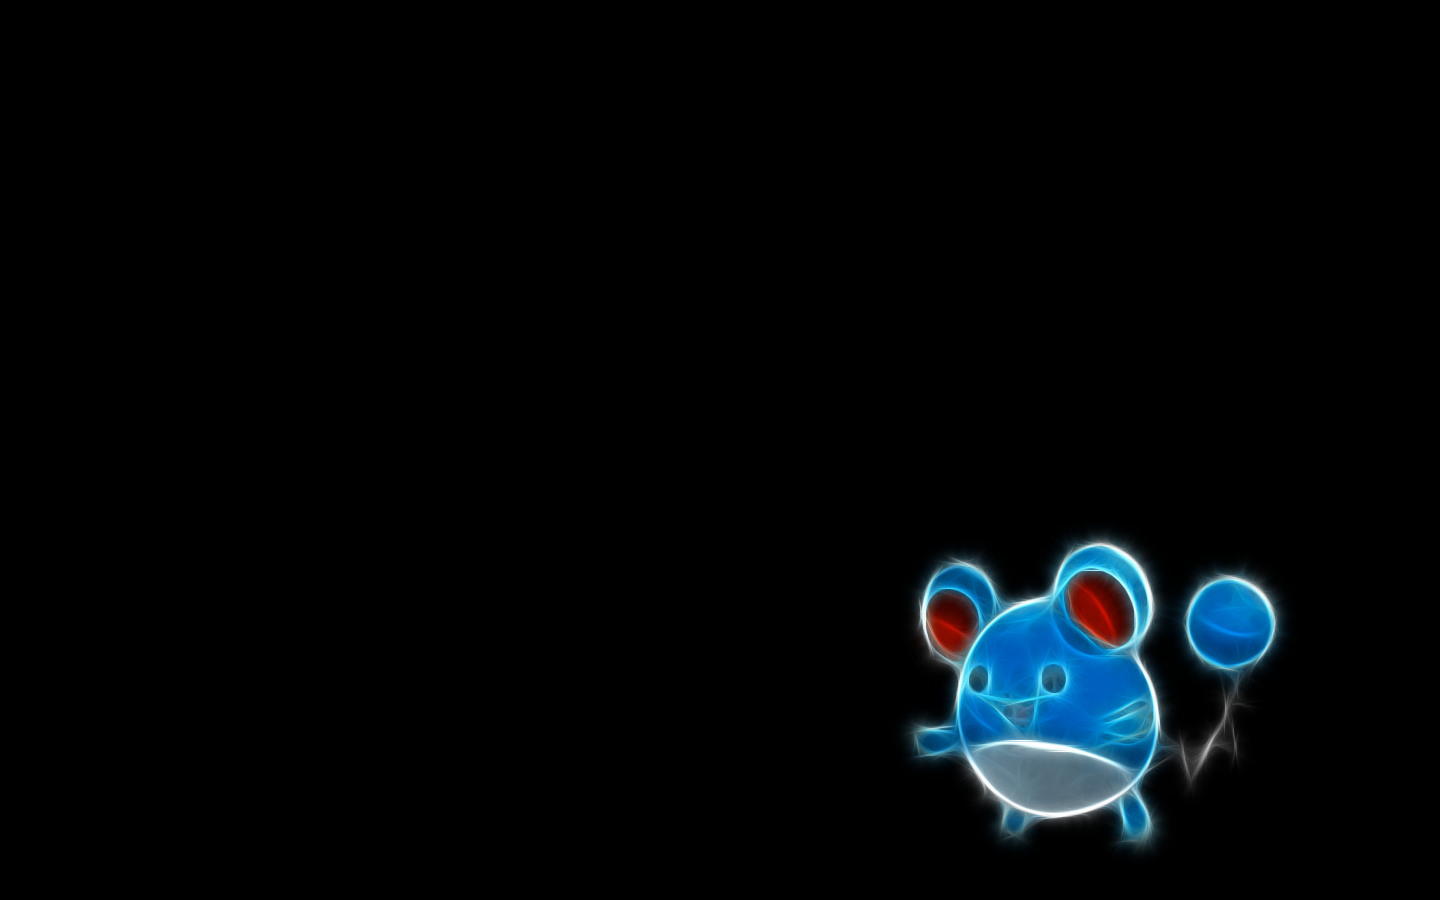 Fractalius, Pokémon, black background, anime